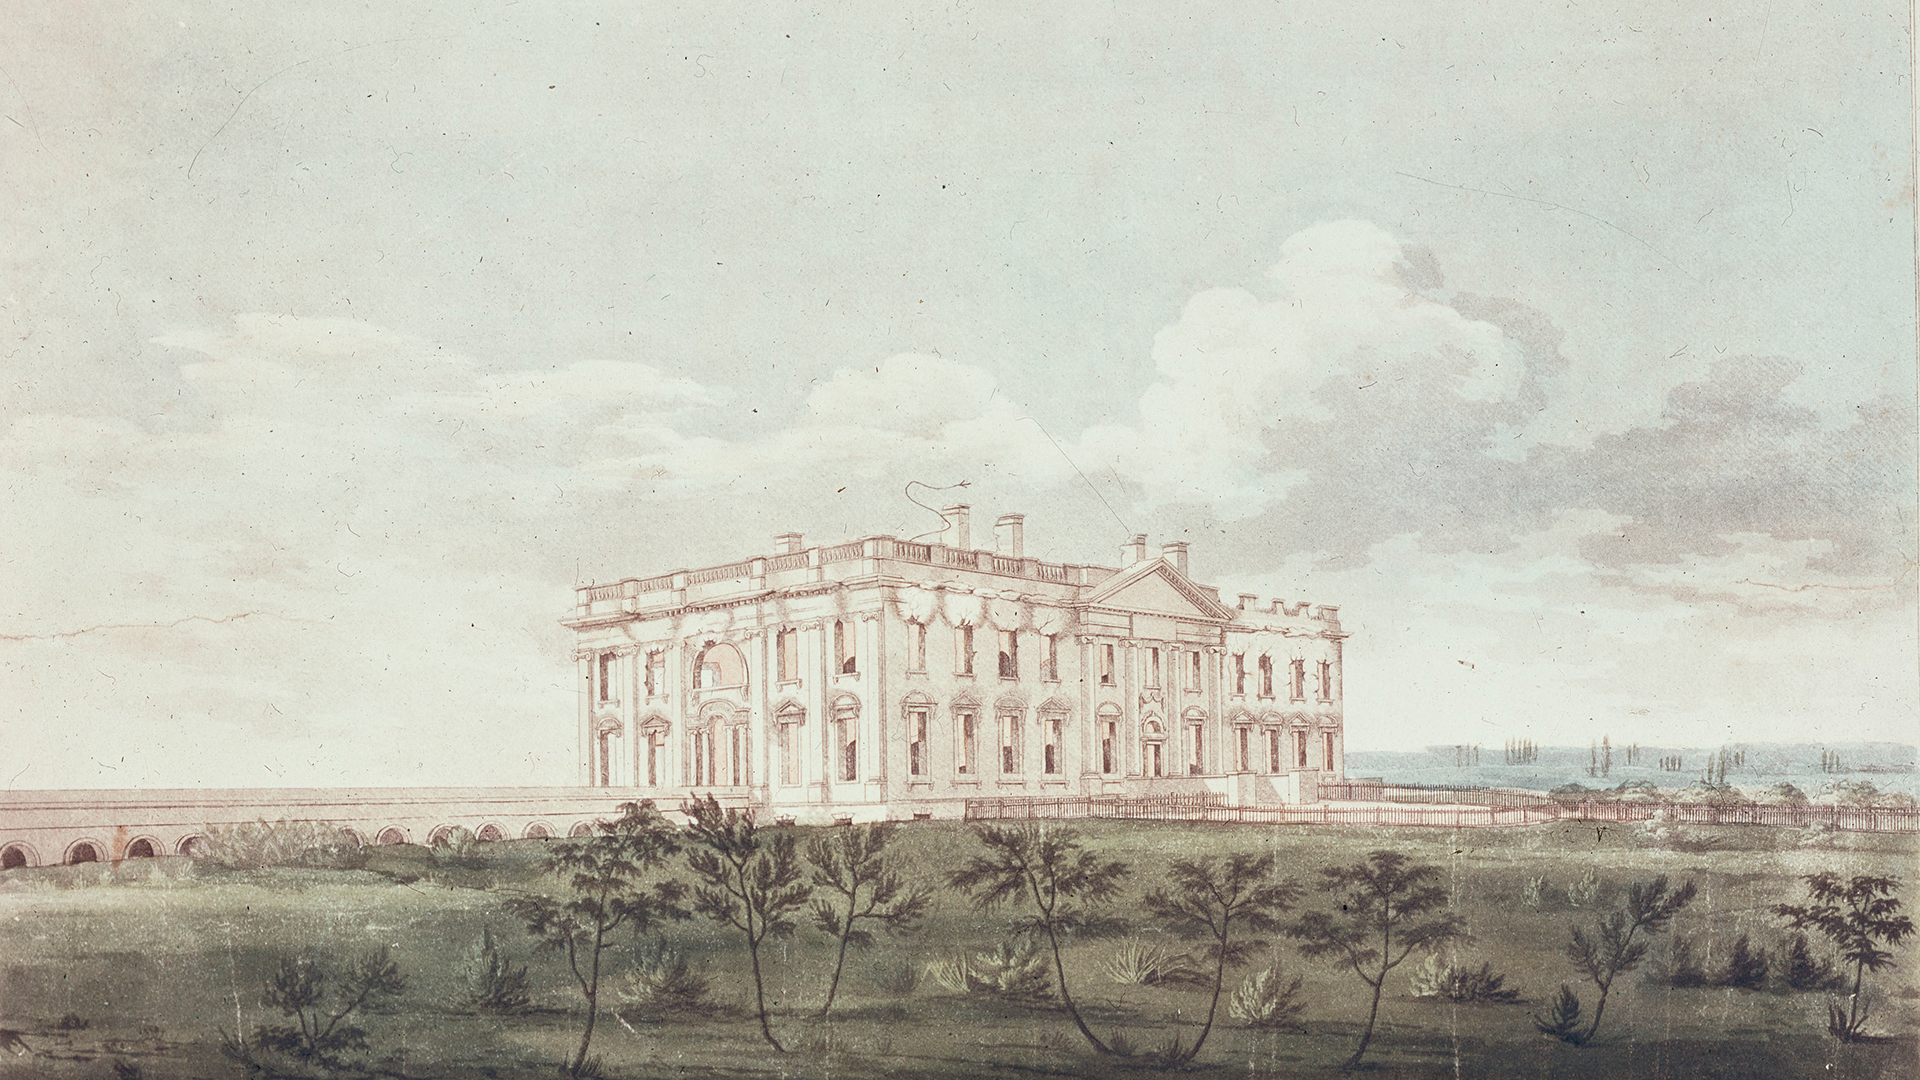 Aquatinta von William Strickland vom Weißen Haus im Jahr 1814 | picture-alliance / akg-images